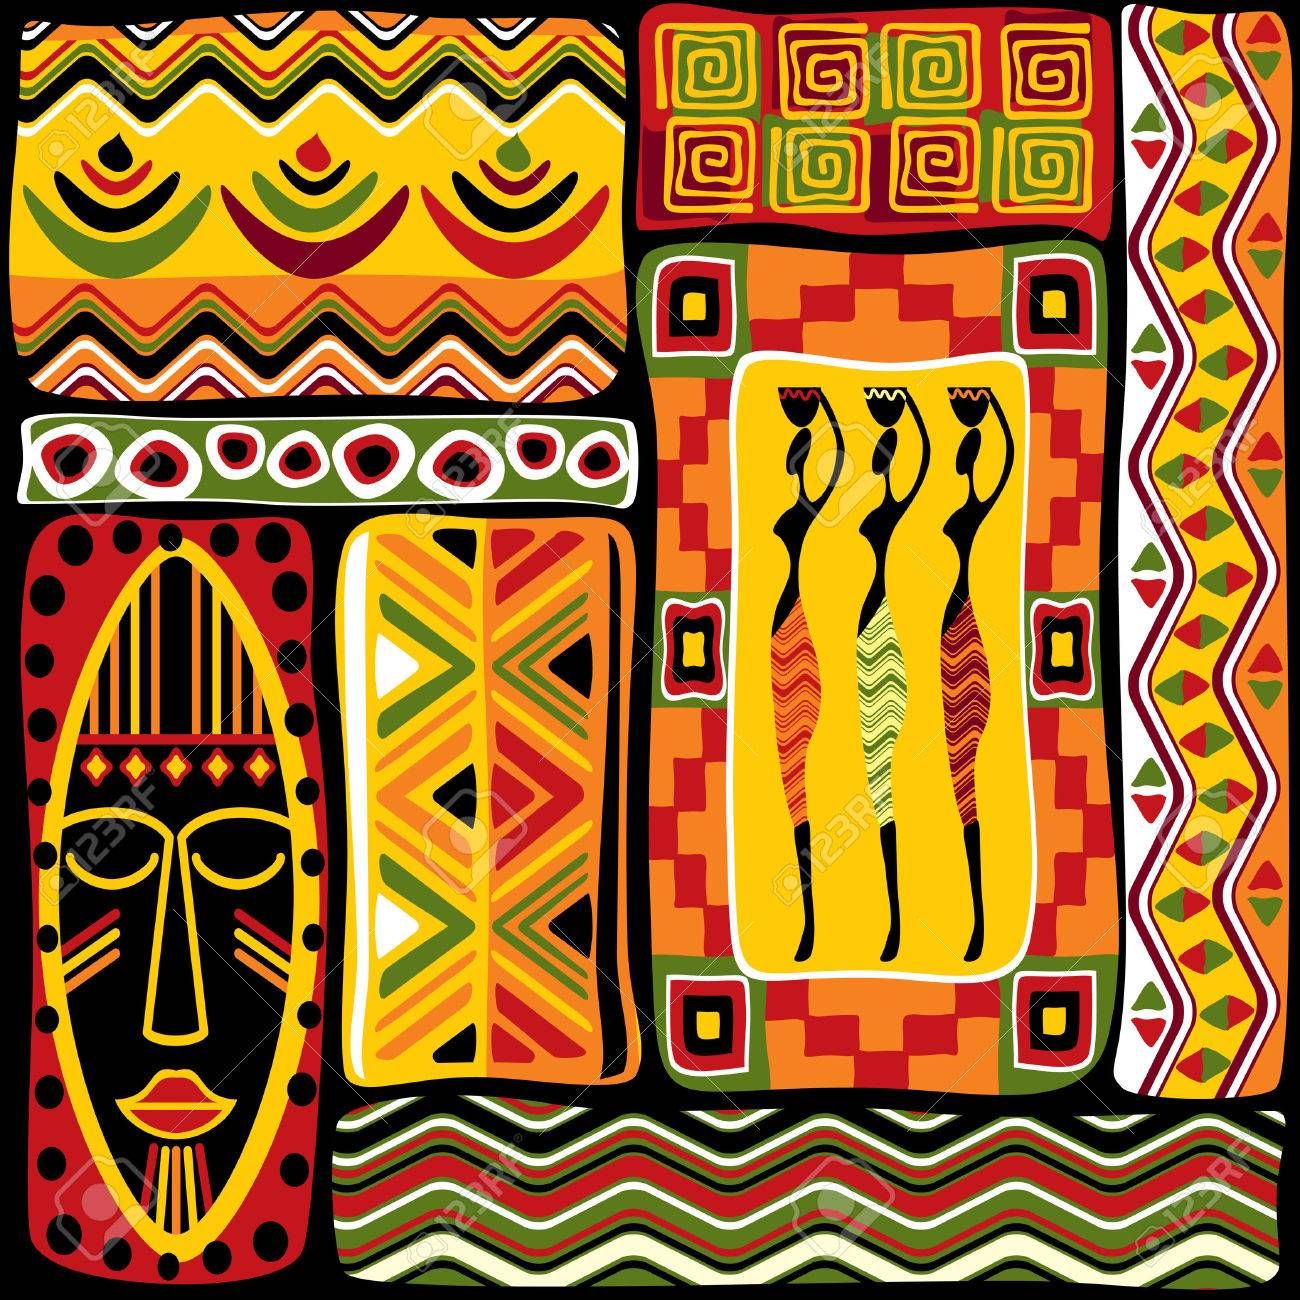 Похожее изображение. Africa art design, Africa art, African paintings